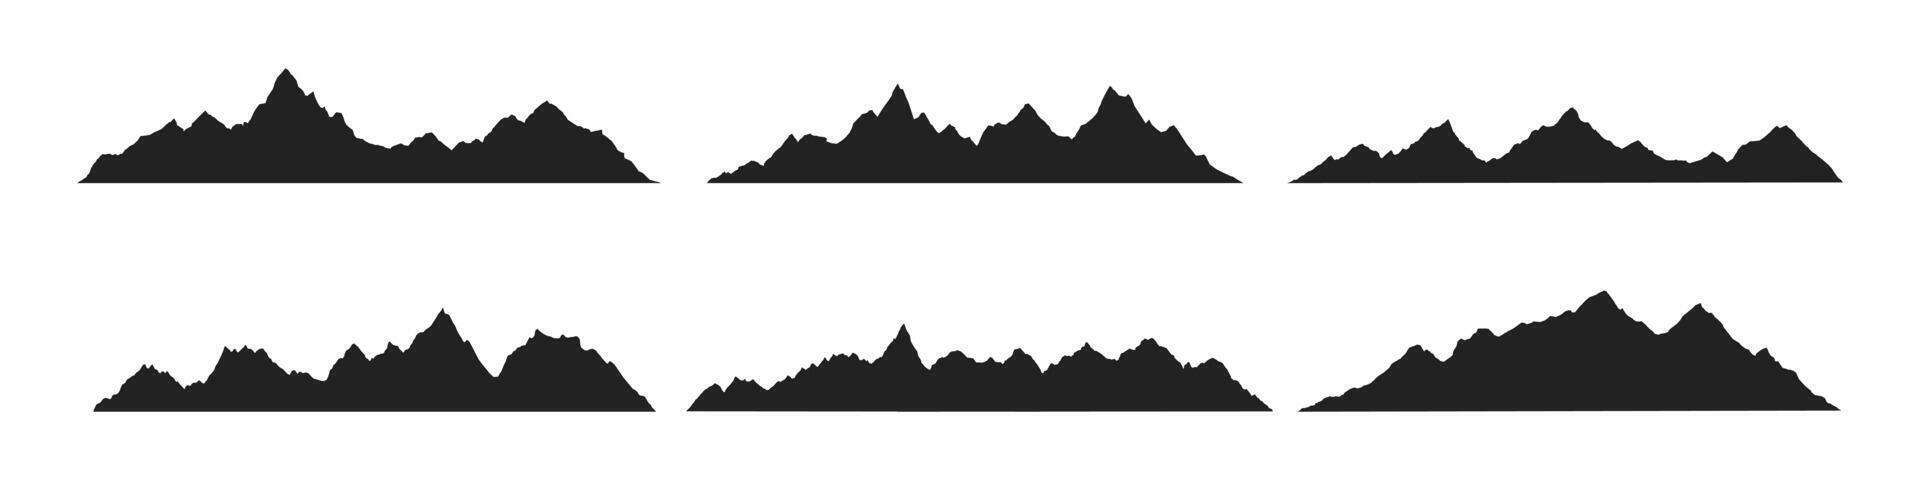 Montagne crêtes de pointe silhouettes plat style conception vecteur illustration ensemble isolé sur blanc Contexte. rocheux montagnes pics avec divers gammes Extérieur la nature paysage Contexte conception éléments.